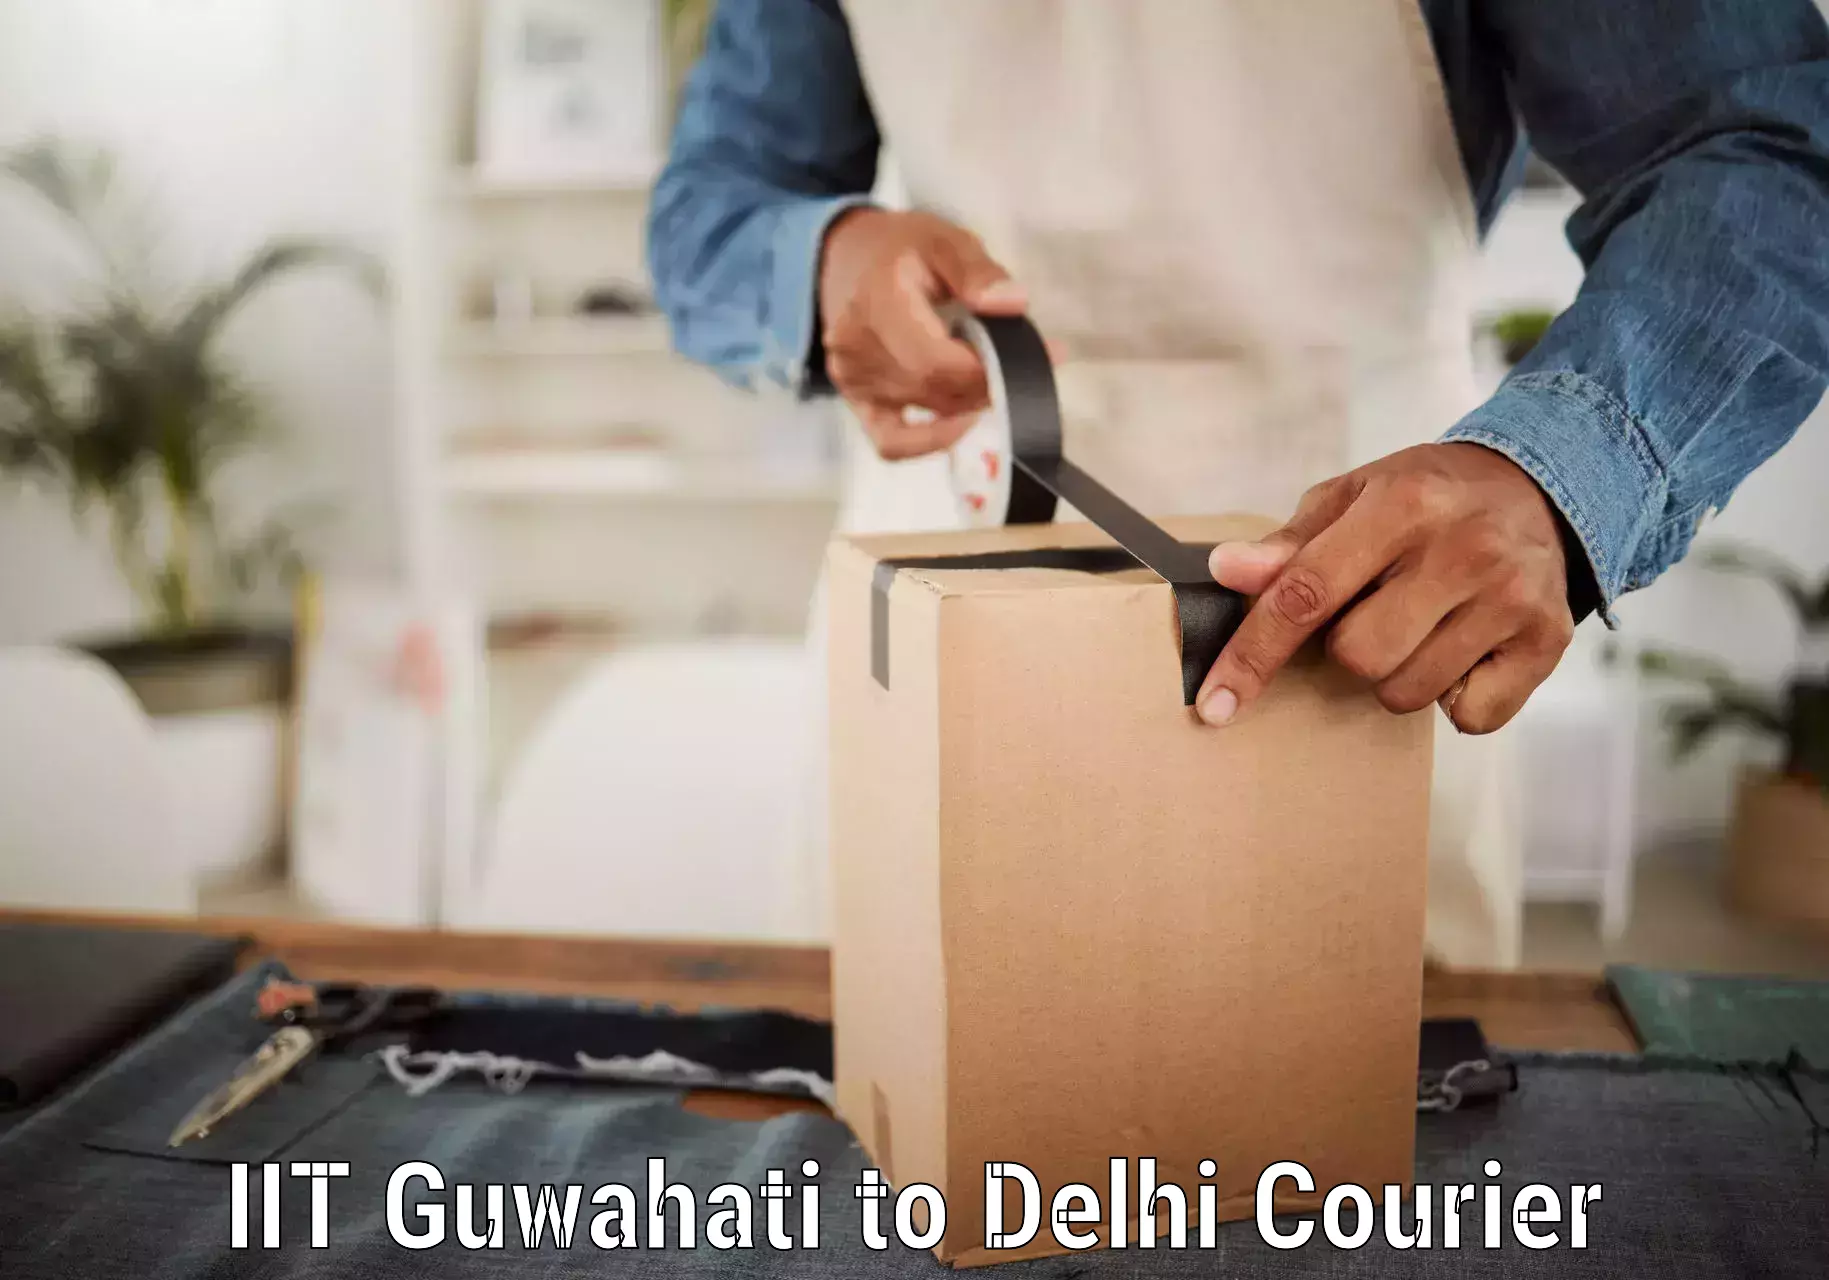 Express logistics providers IIT Guwahati to Delhi